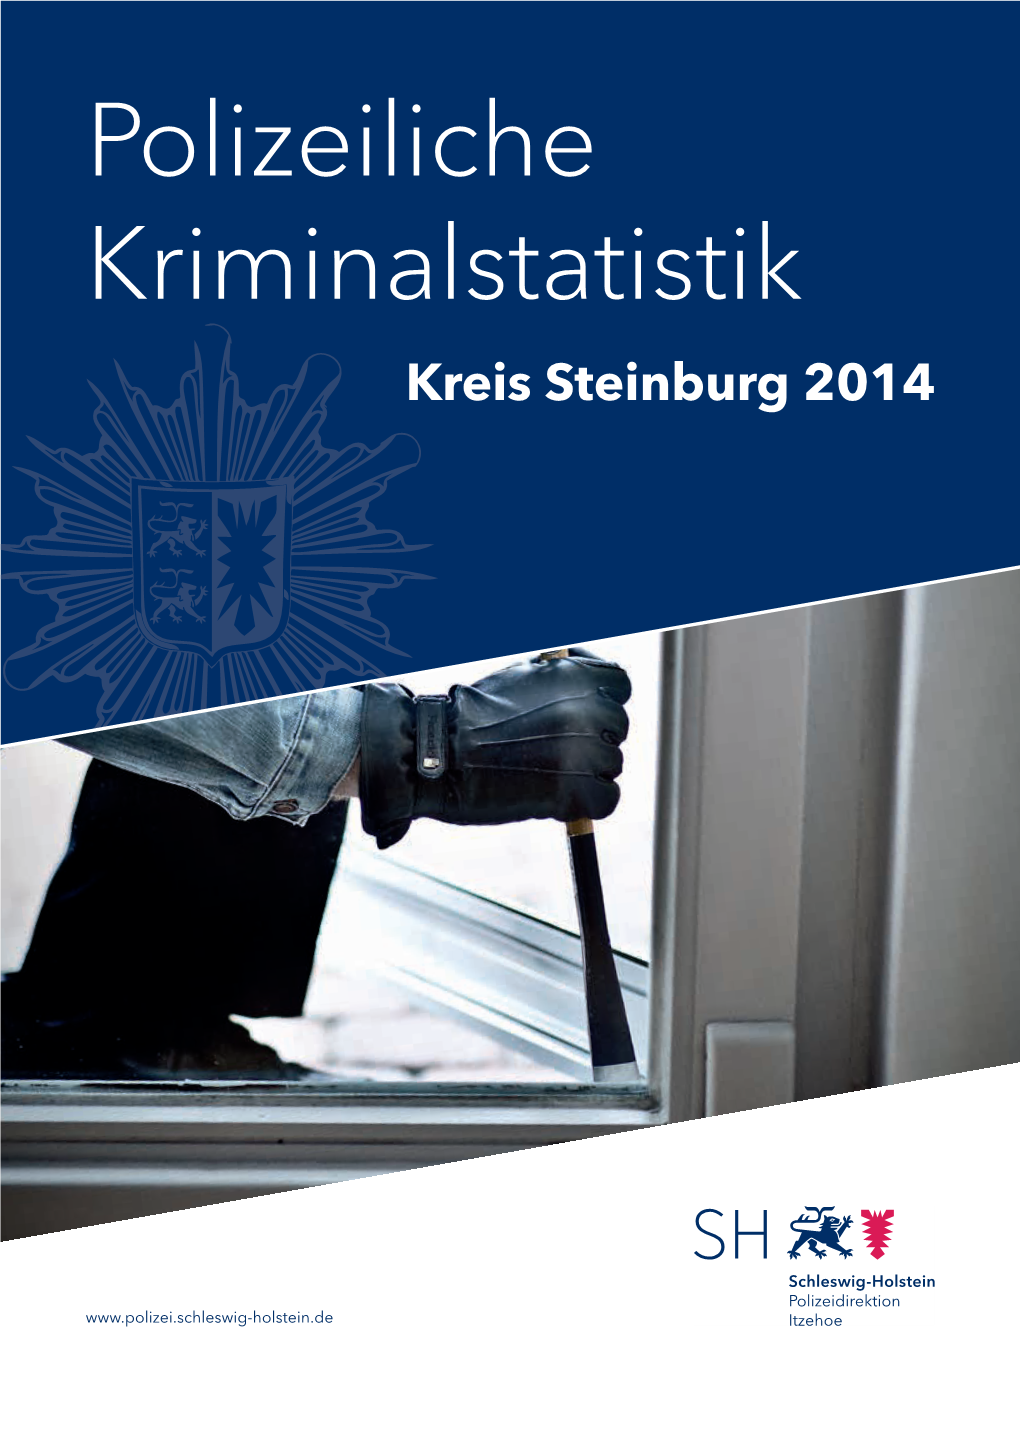 Polizeiliche Kriminalstatistik Kreis Steinburg 2014